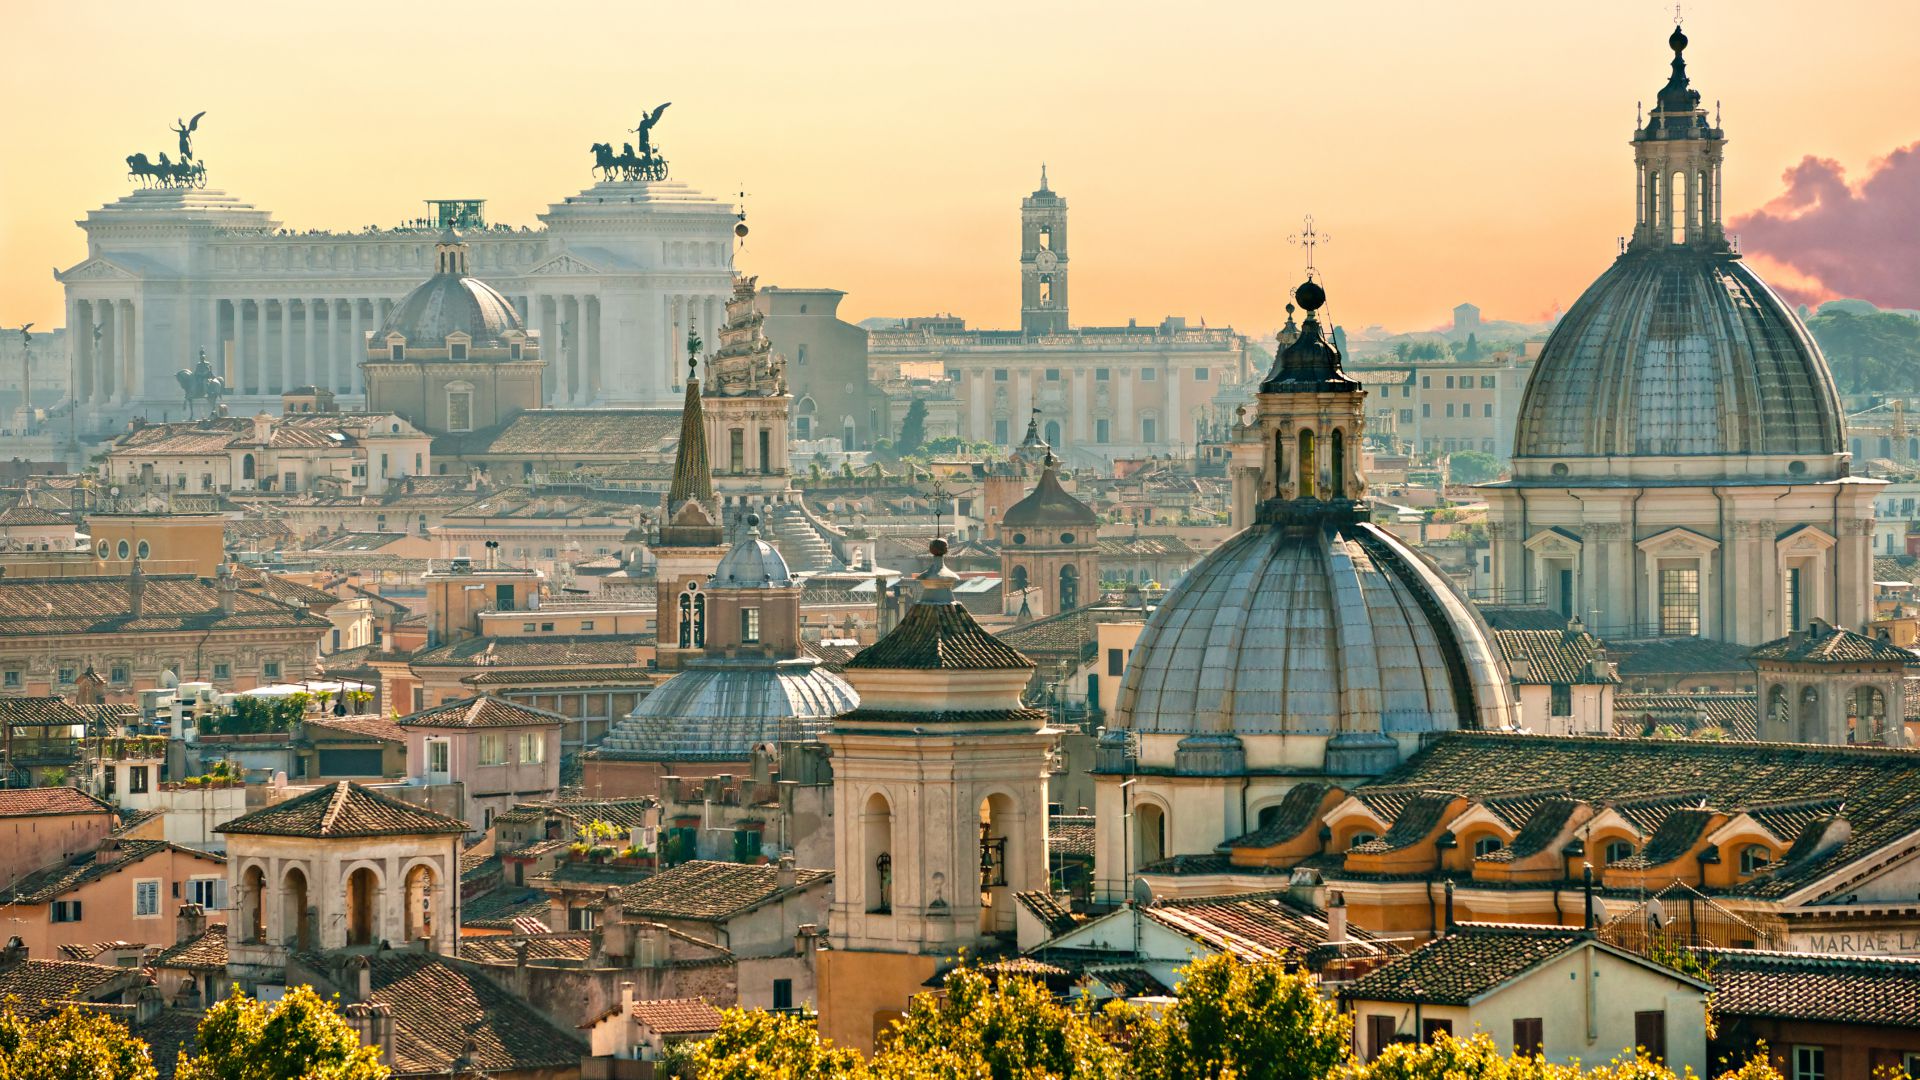 Ватикан, Рим, туризм, путешествие, Vatican City, Rome, Tourism, Travel (horizontal)